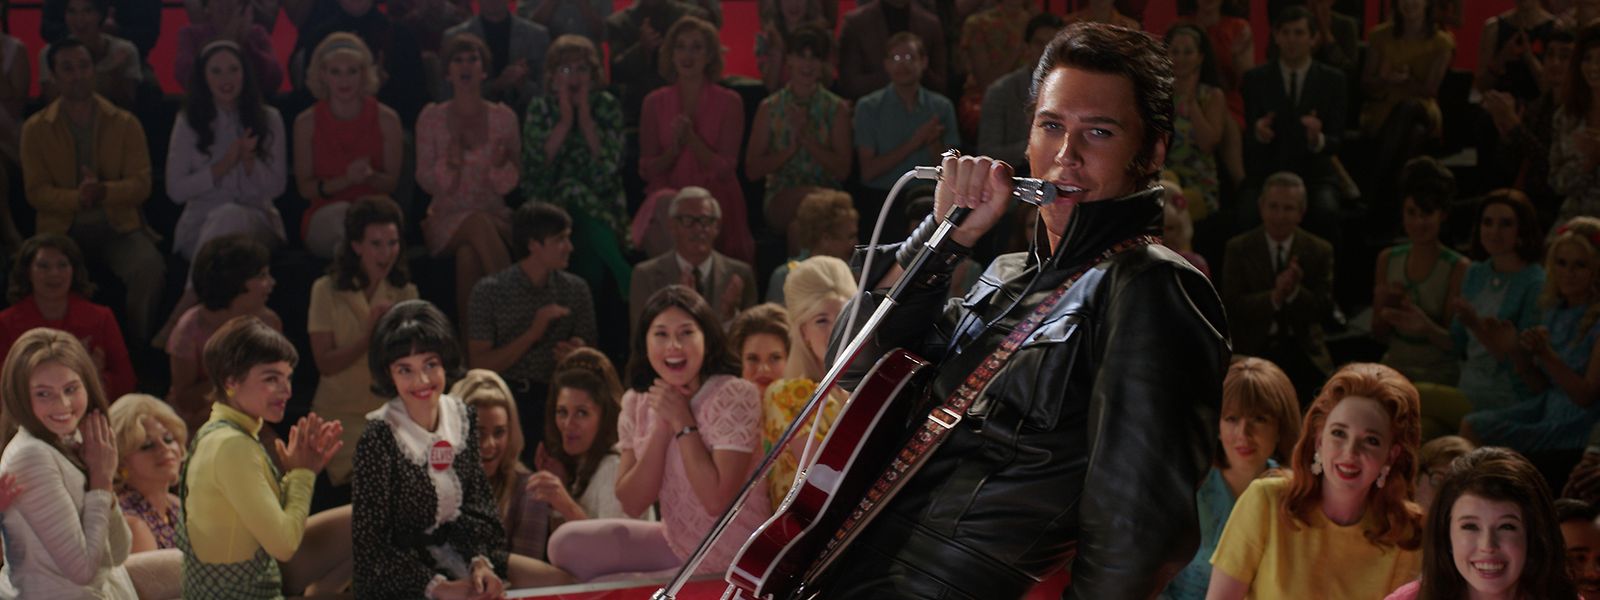 Das 159 Minuten lange Biopic „Elvis“ – mit Austin Butler als King of Rock 'n' Roll – handelt nicht nur vom Aufstieg und Fall des weltbekannten Musikers, sondern thematisiert auch seine zwischenmenschlichen Beziehungen. 